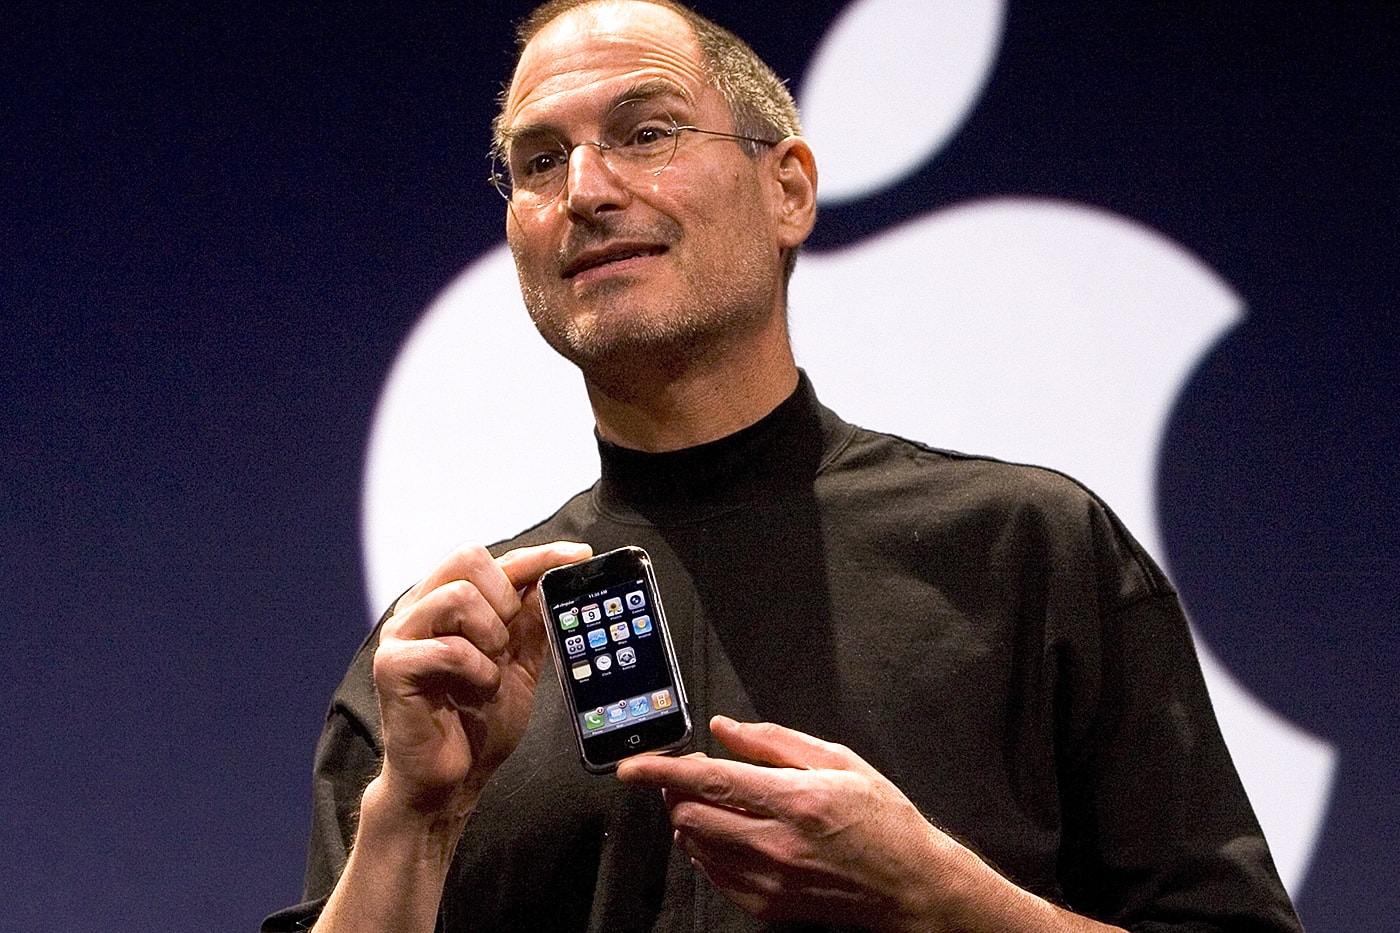 スティーブ・ジョブズの象徴的タートルネックと三宅一生との繋がりが再注目される Steve Jobs' iconic turtleneck and Issey Miyake's connection to him are getting renewed attention